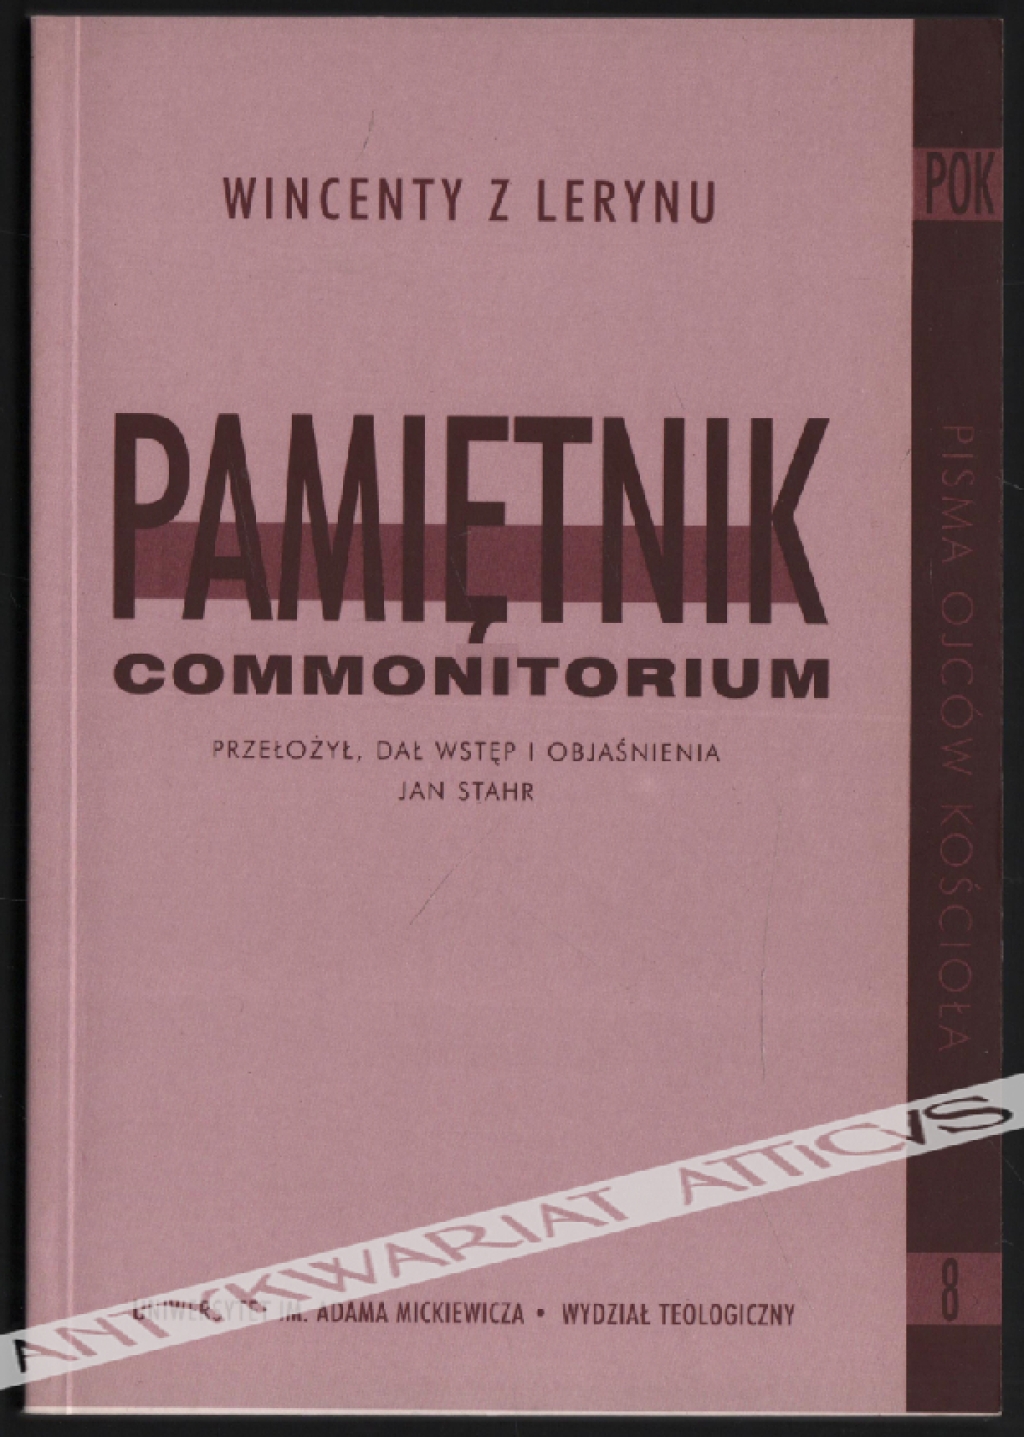 Pamiętnik commonitorium